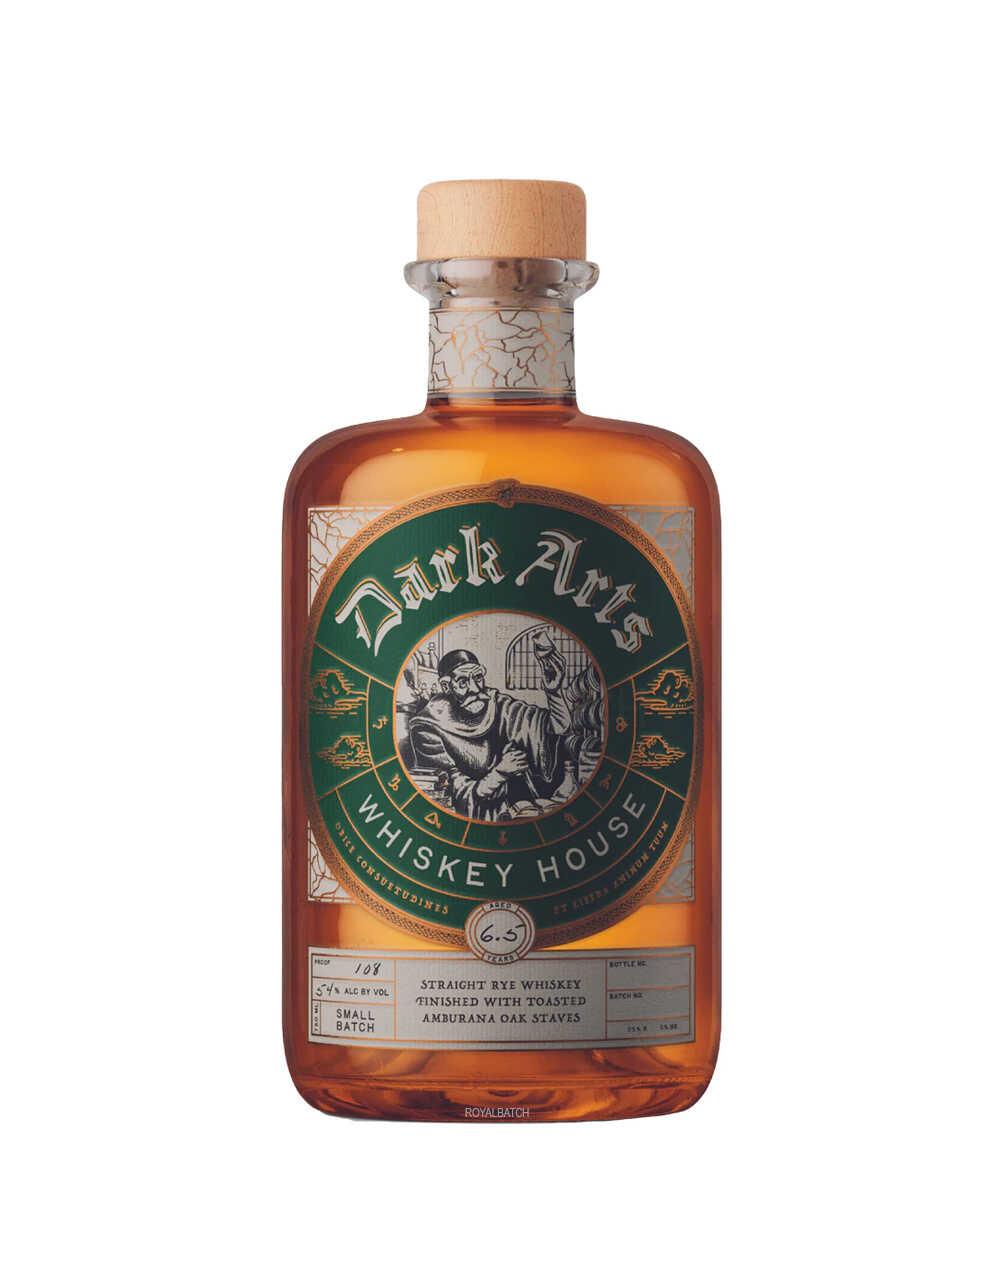 Dark Arts Amburana Oak Staves Small Batch 7 Year Old Straight Rye Whiskey